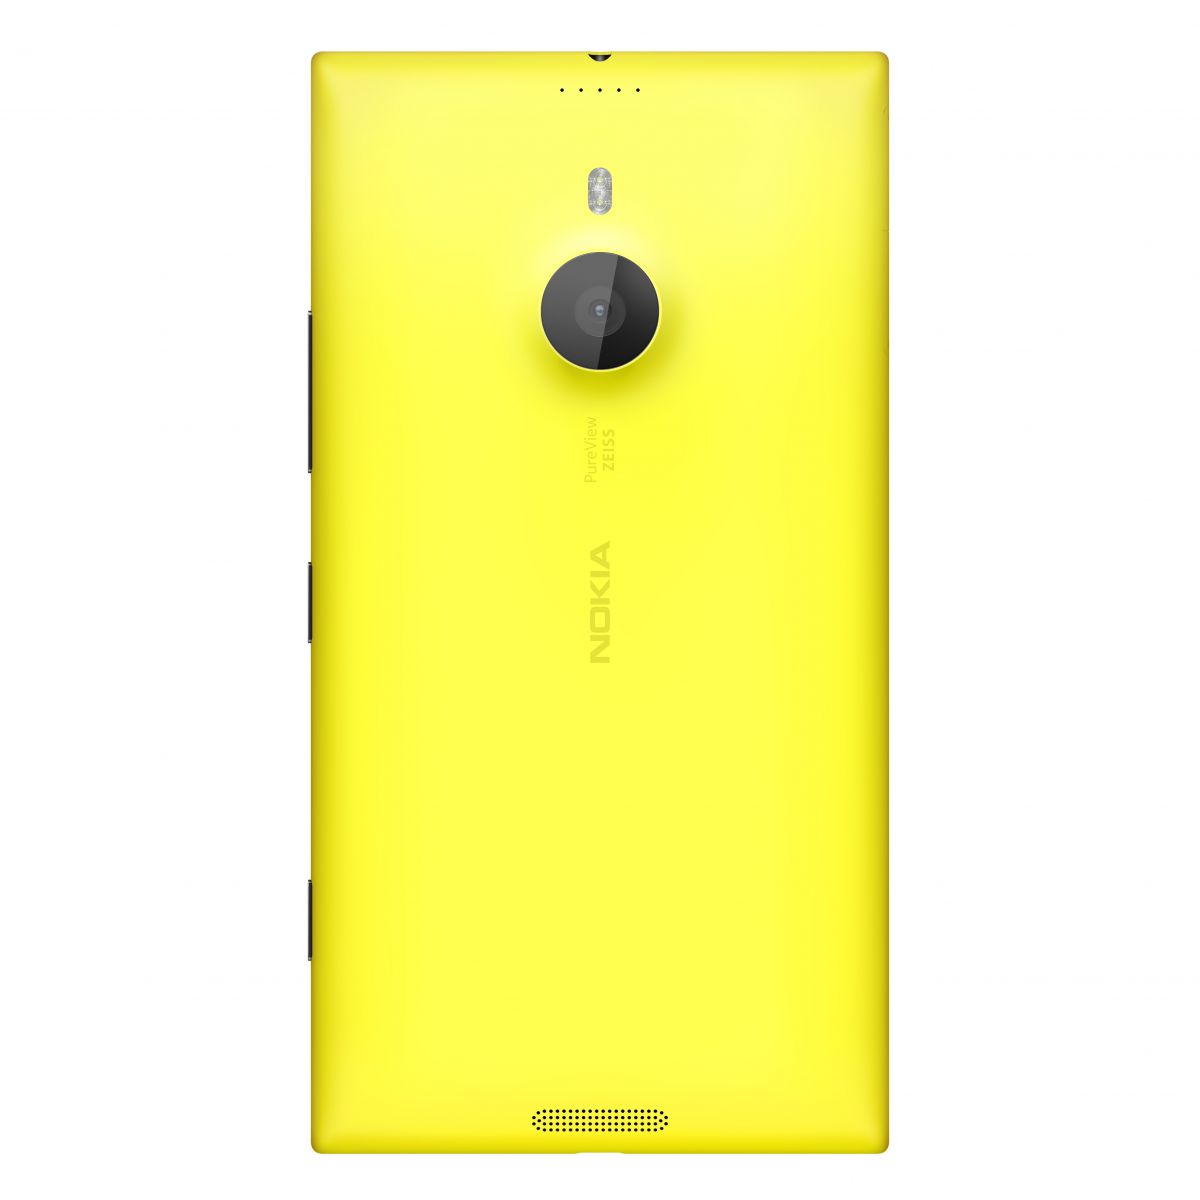 1200-nokia_lumia_1520_yellow-back.jpg